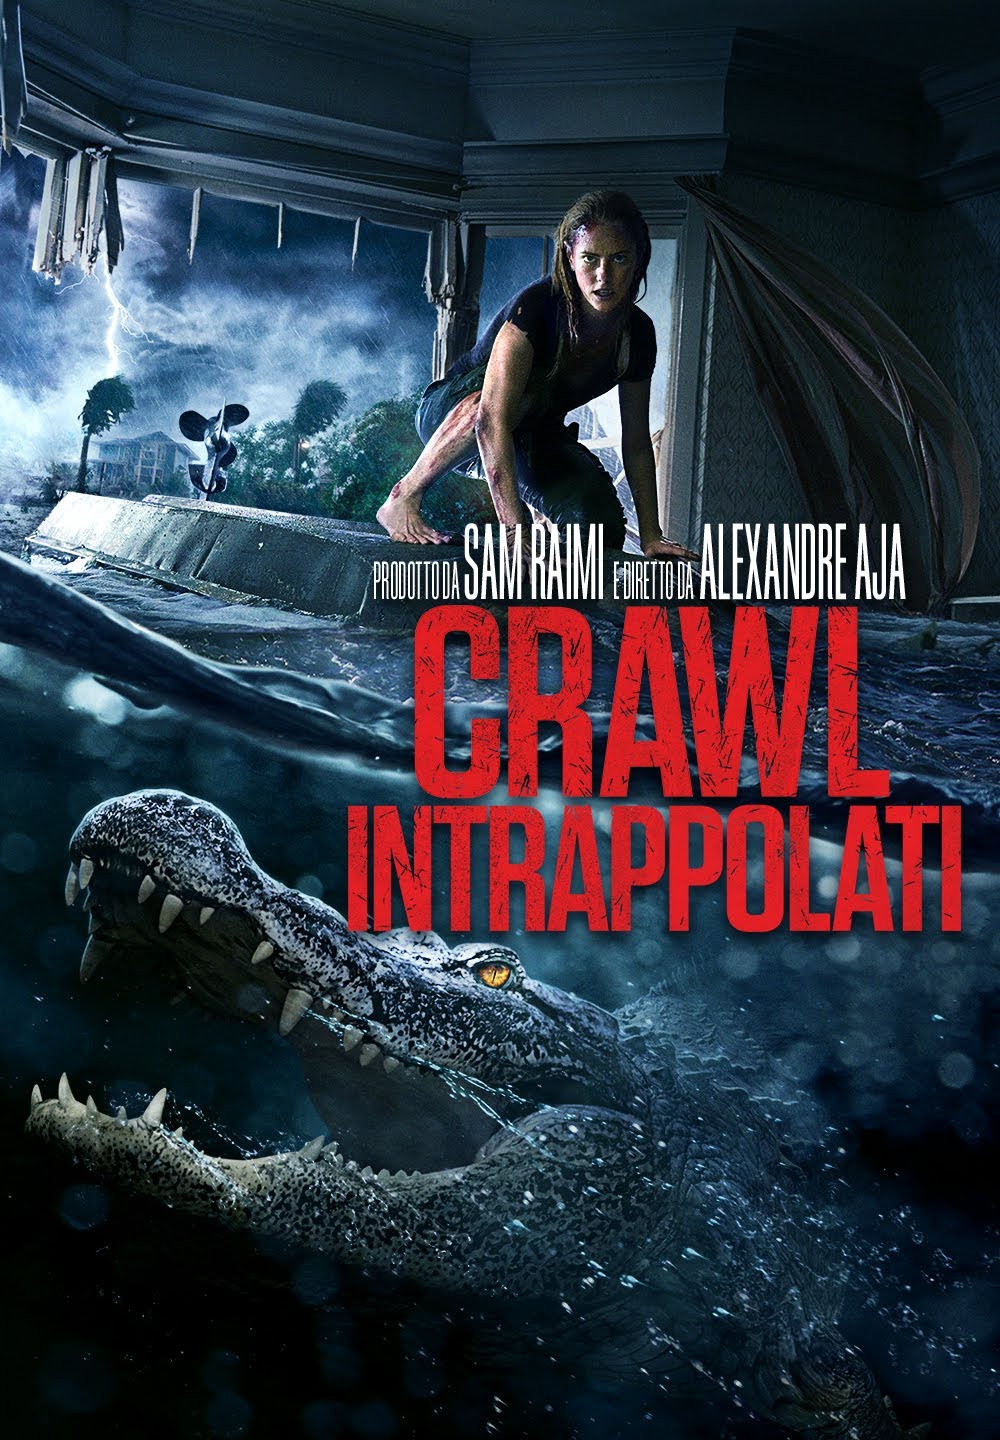 Crawl – Intrappolati [HD] (2019)